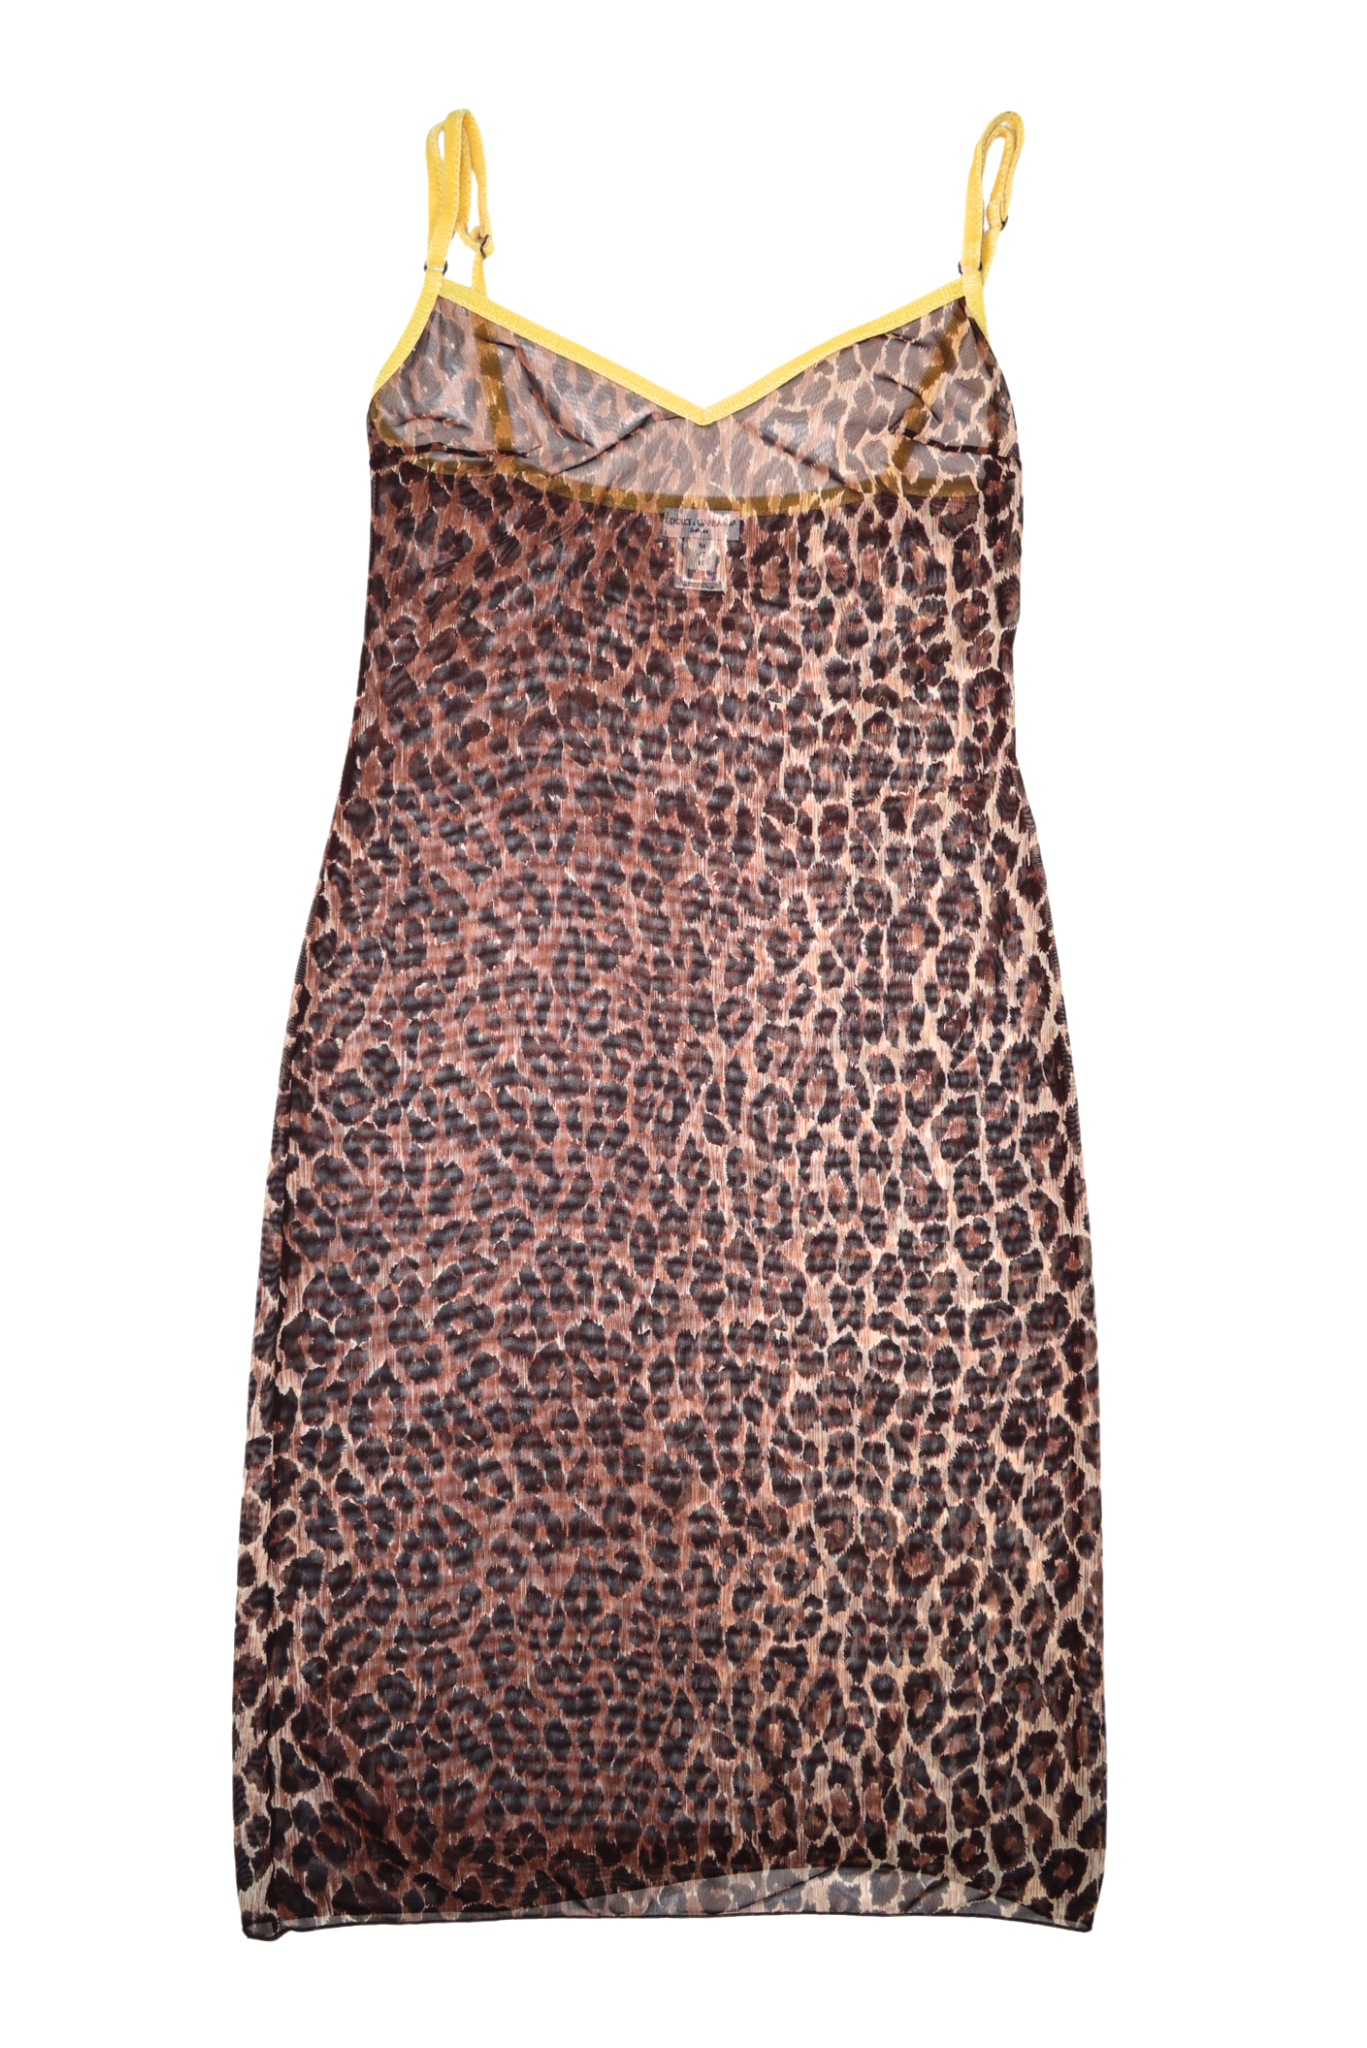 D&G Rare Fuzzy Leopard Slip Dress